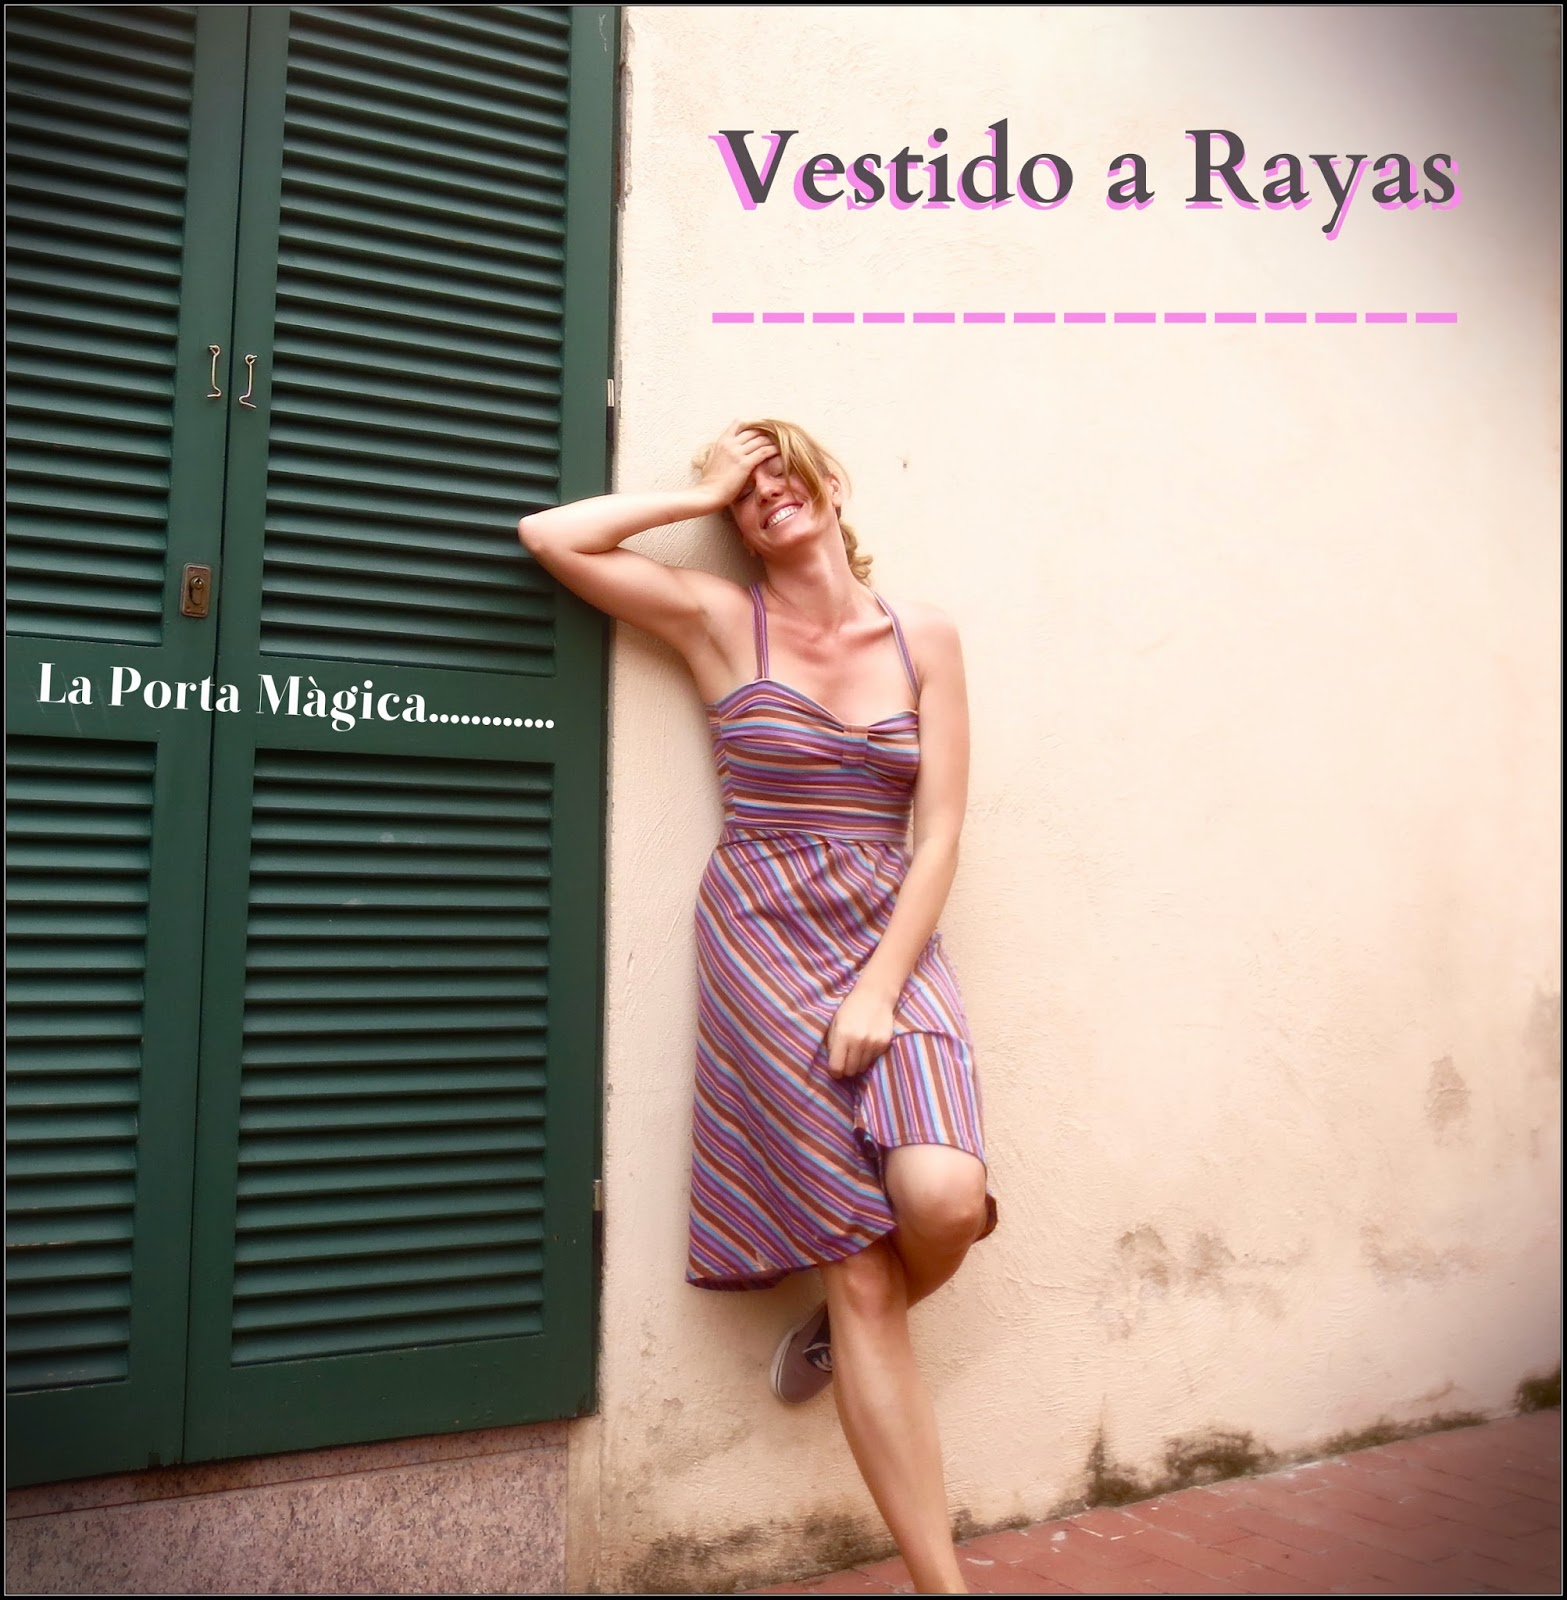 La Porta Magica - Ve a la moda cosiendo tu propia ropa. Blog de costura  facil.: Vestido a Rayas..( I )